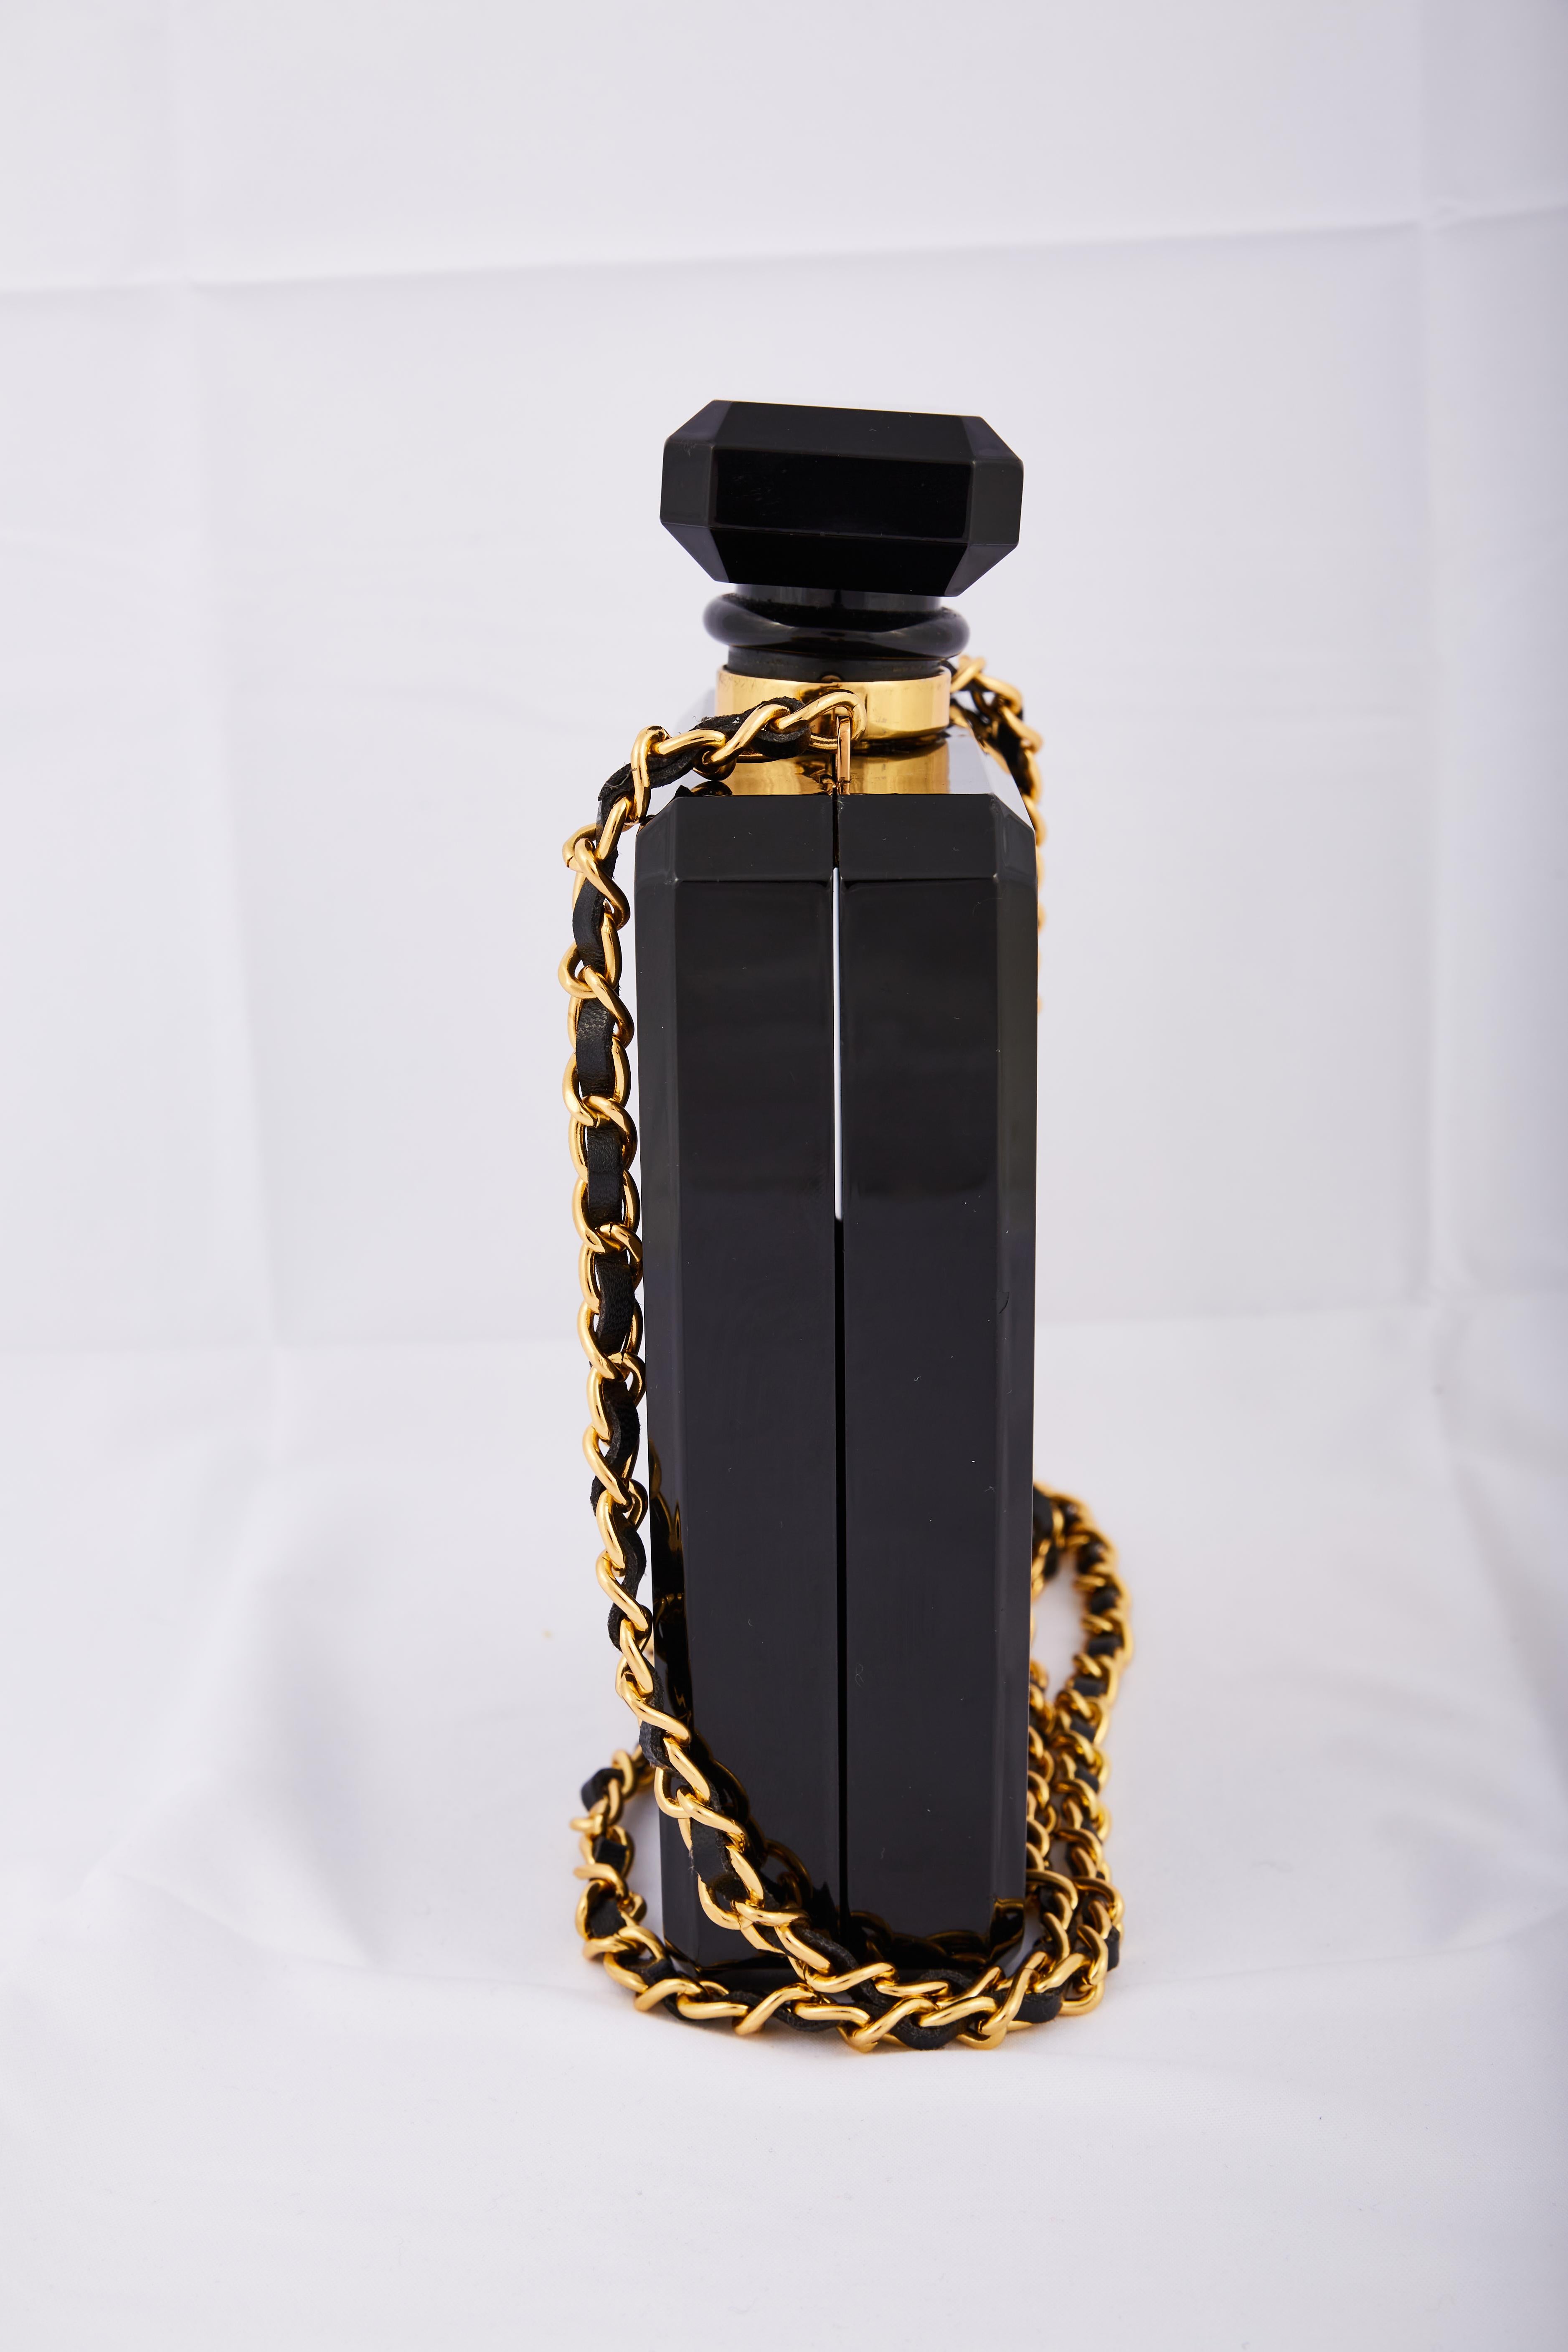 Chanel No5 Perfume Black Limited Edition Evening Shoulder Bag en vente 4